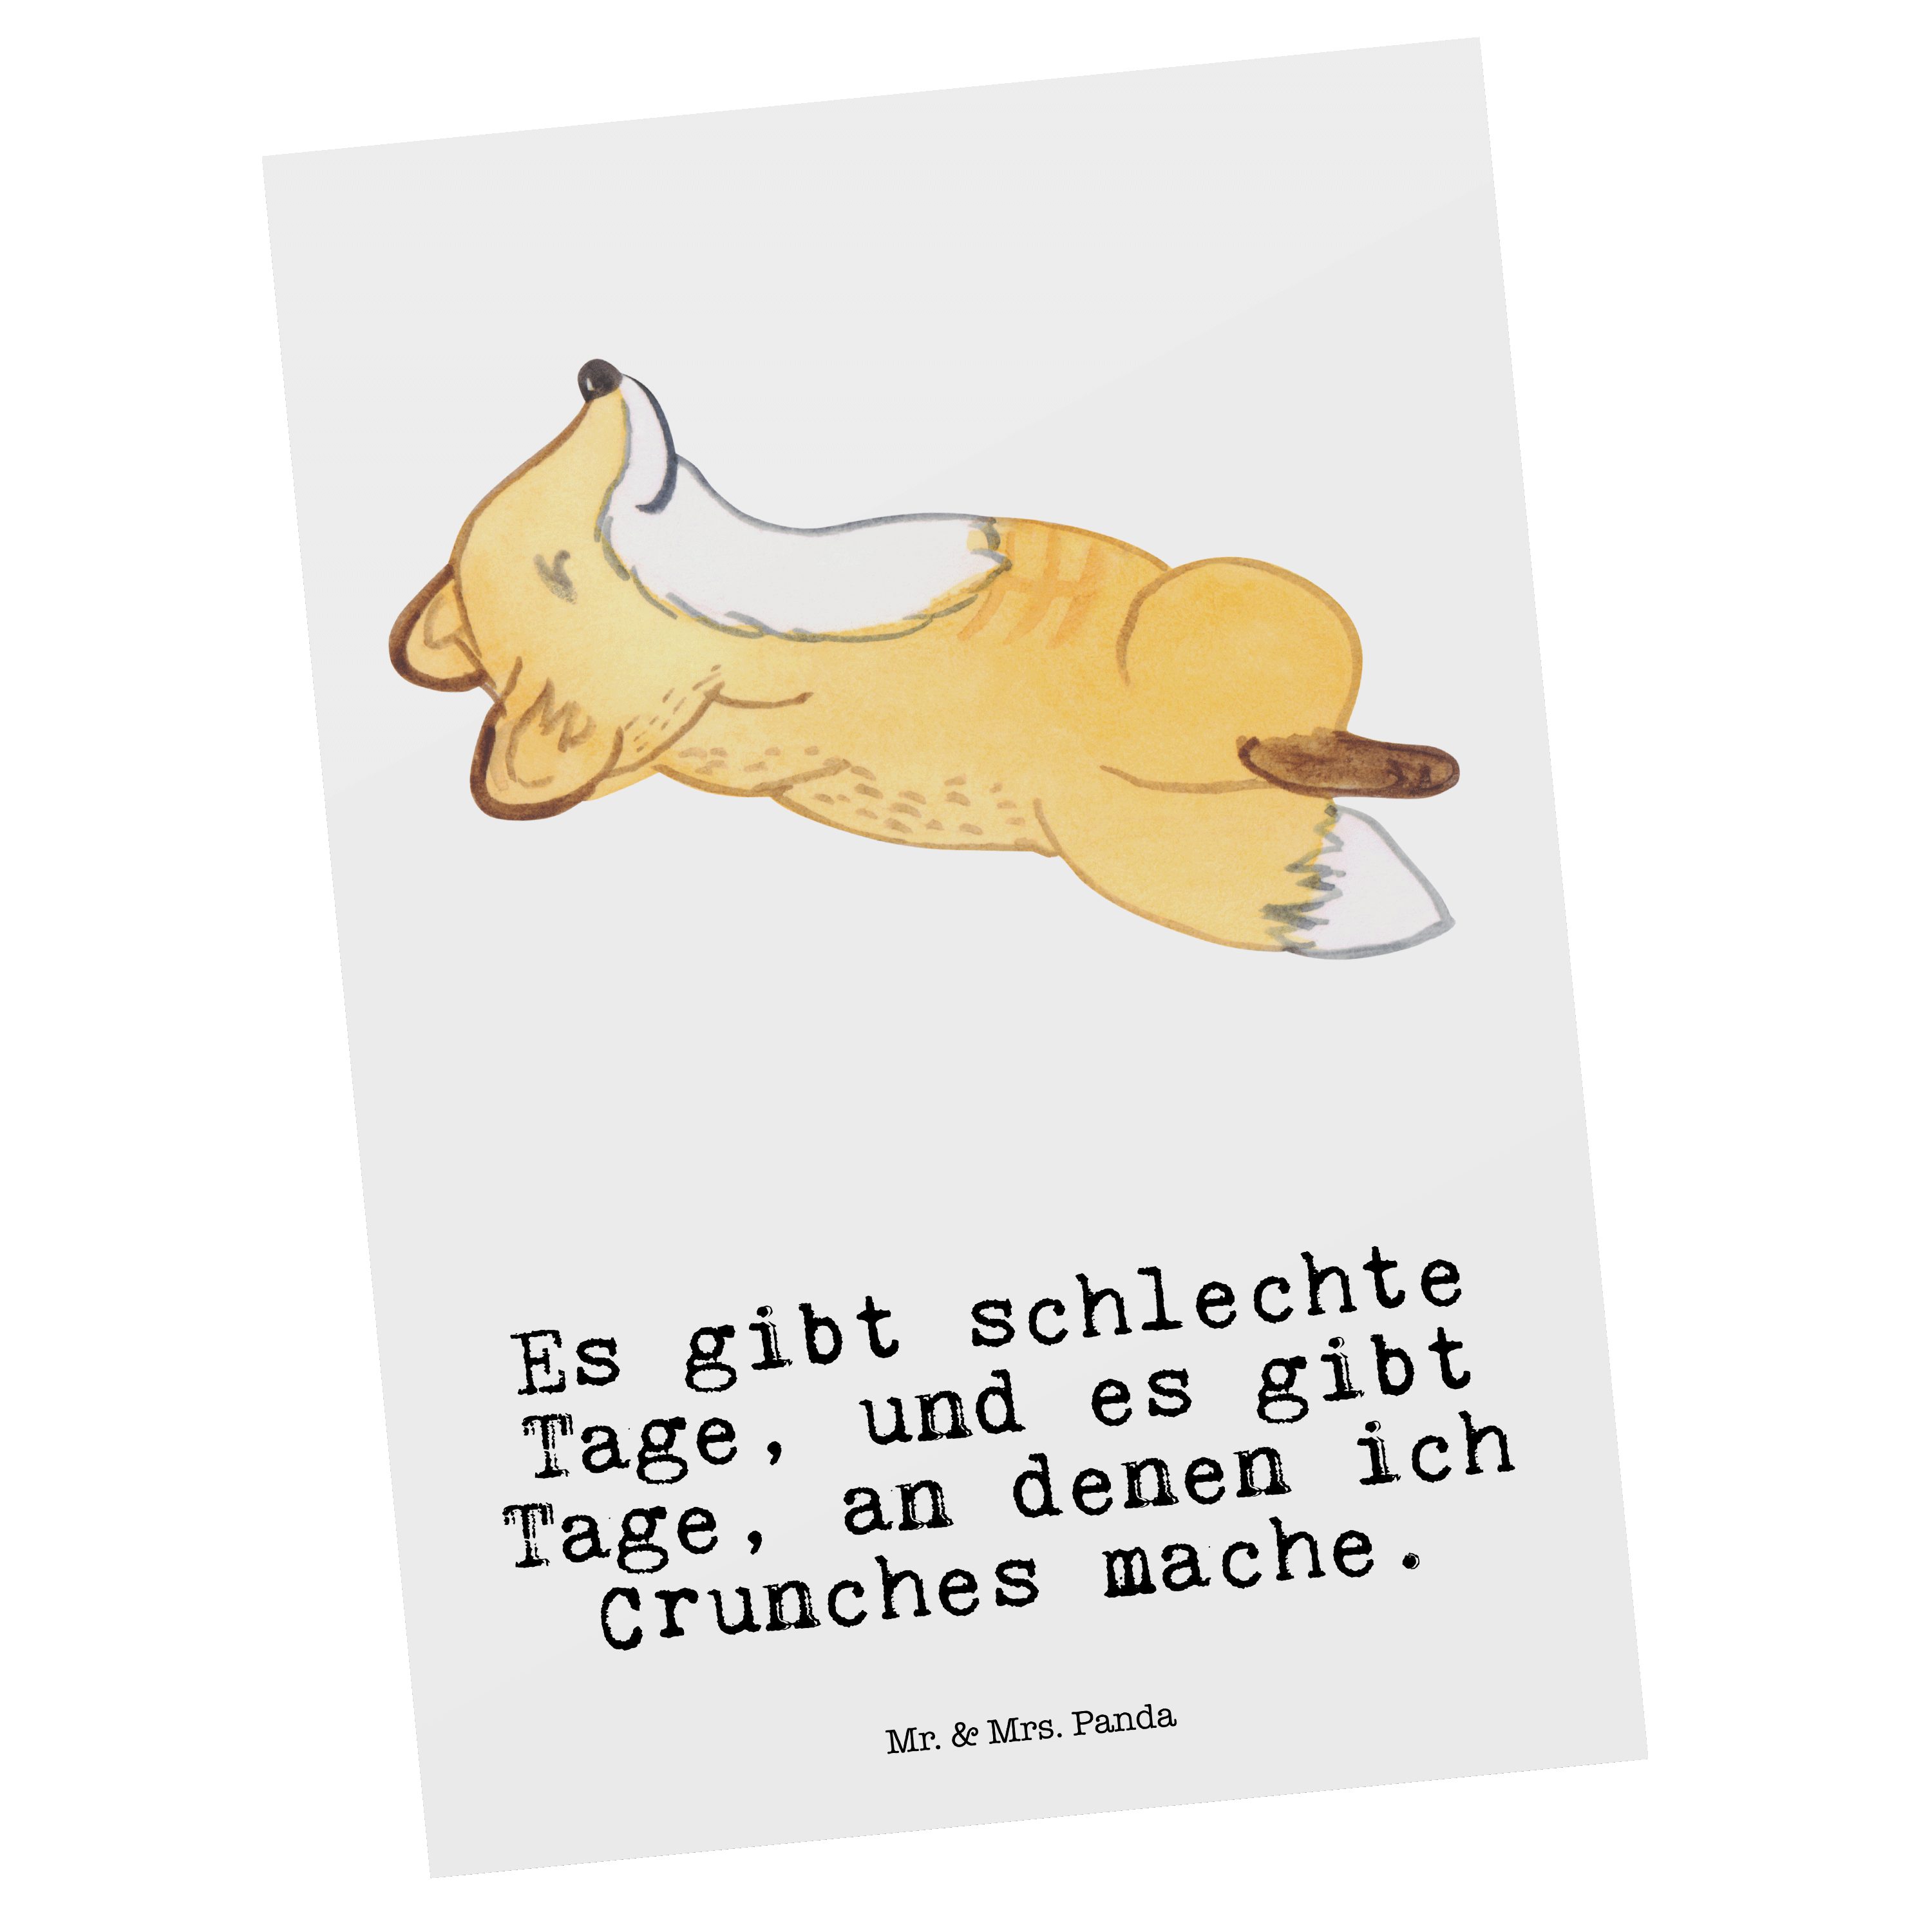 Mr. & Mrs. Panda Postkarte Fuchs Crunches Tage - Weiß - Geschenk, Hobby, Schenken, Geschenkkarte